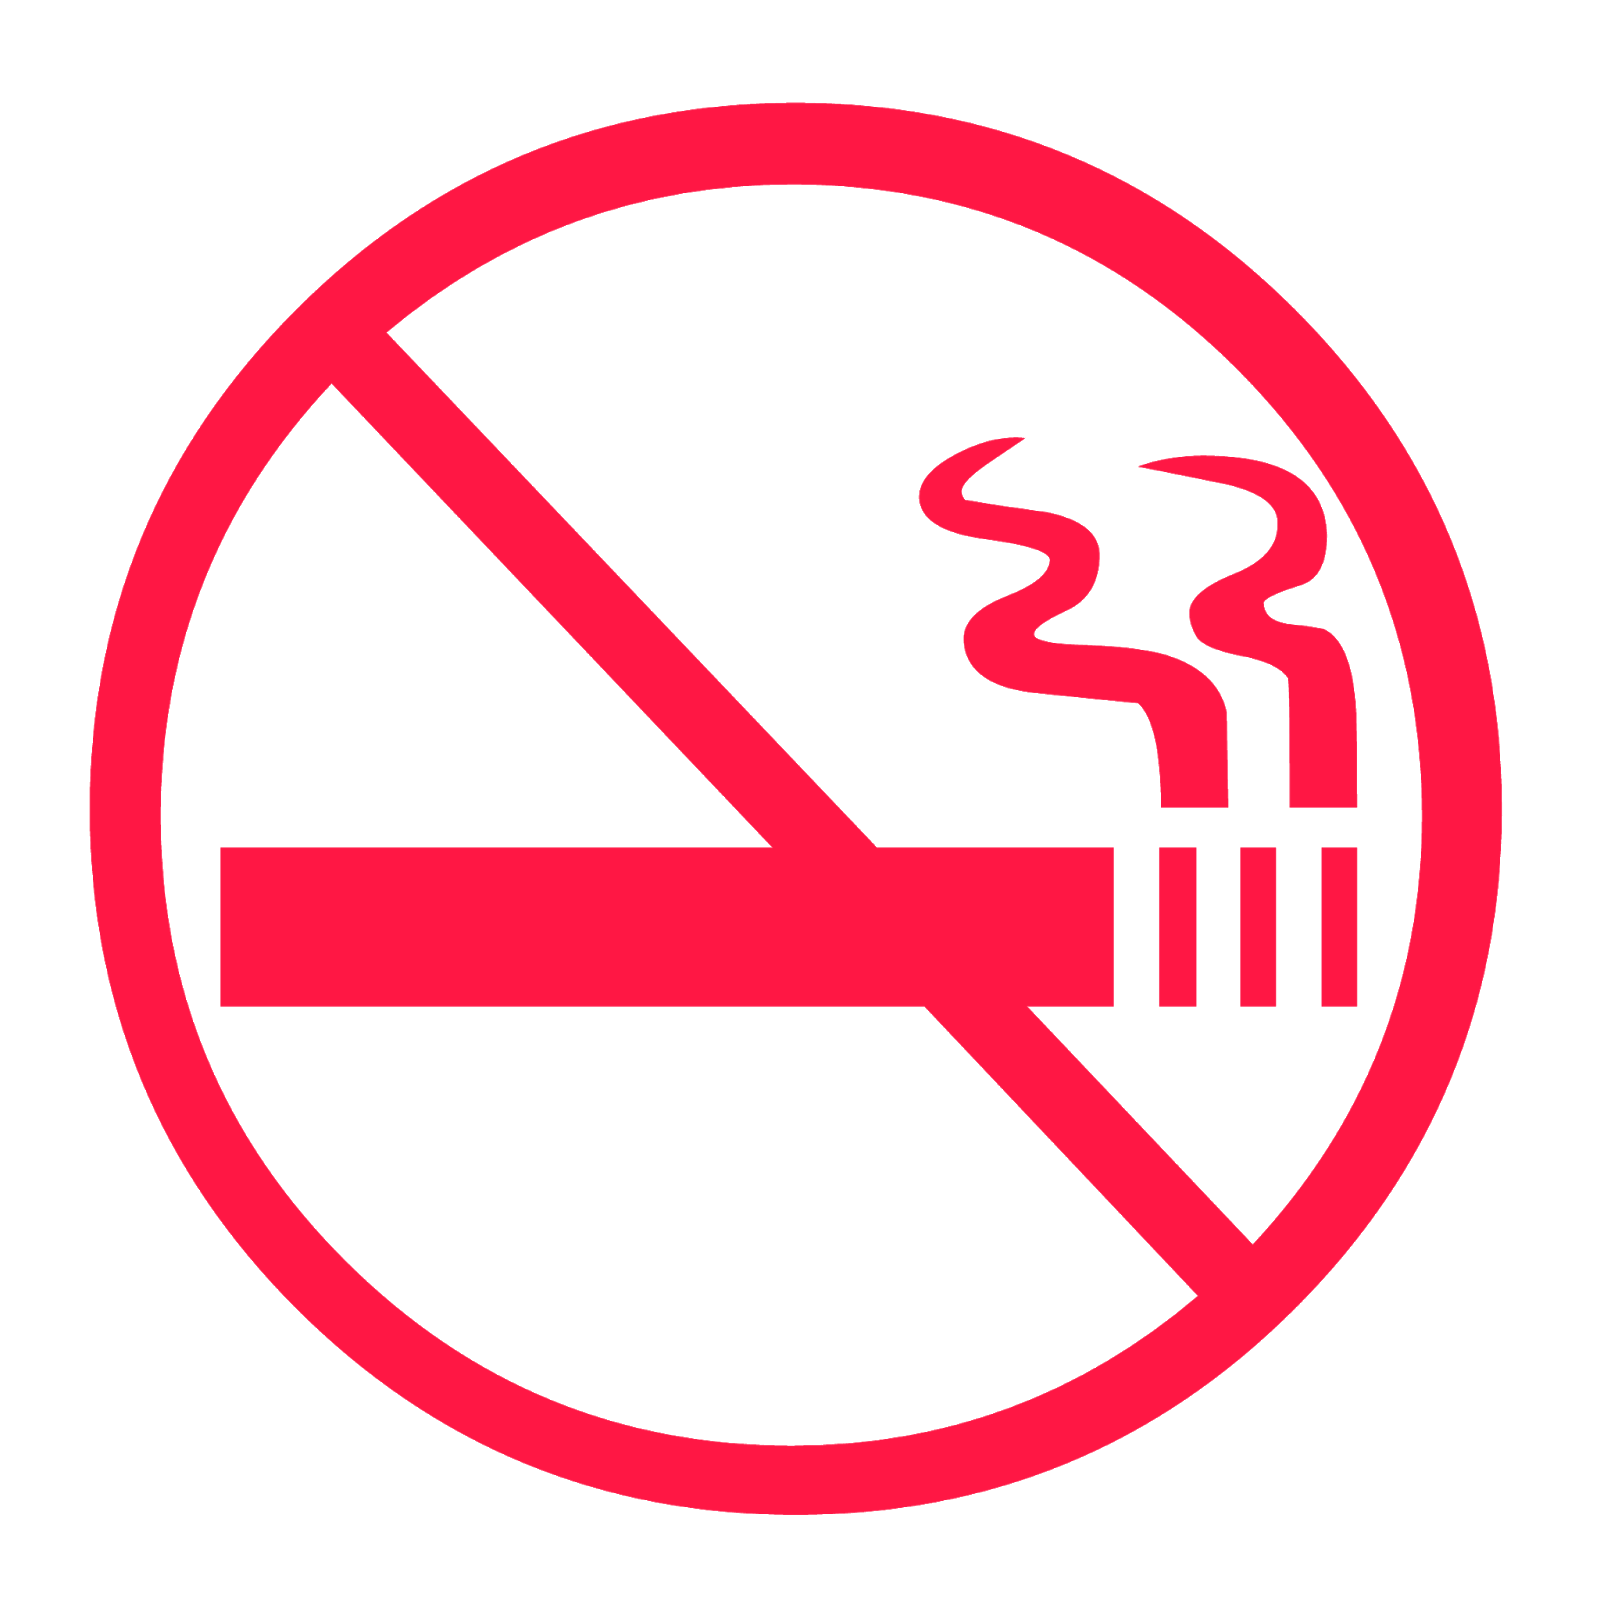 صورة ممنوع التدخين لا للتدخين صور ممنوع التدخين الصور